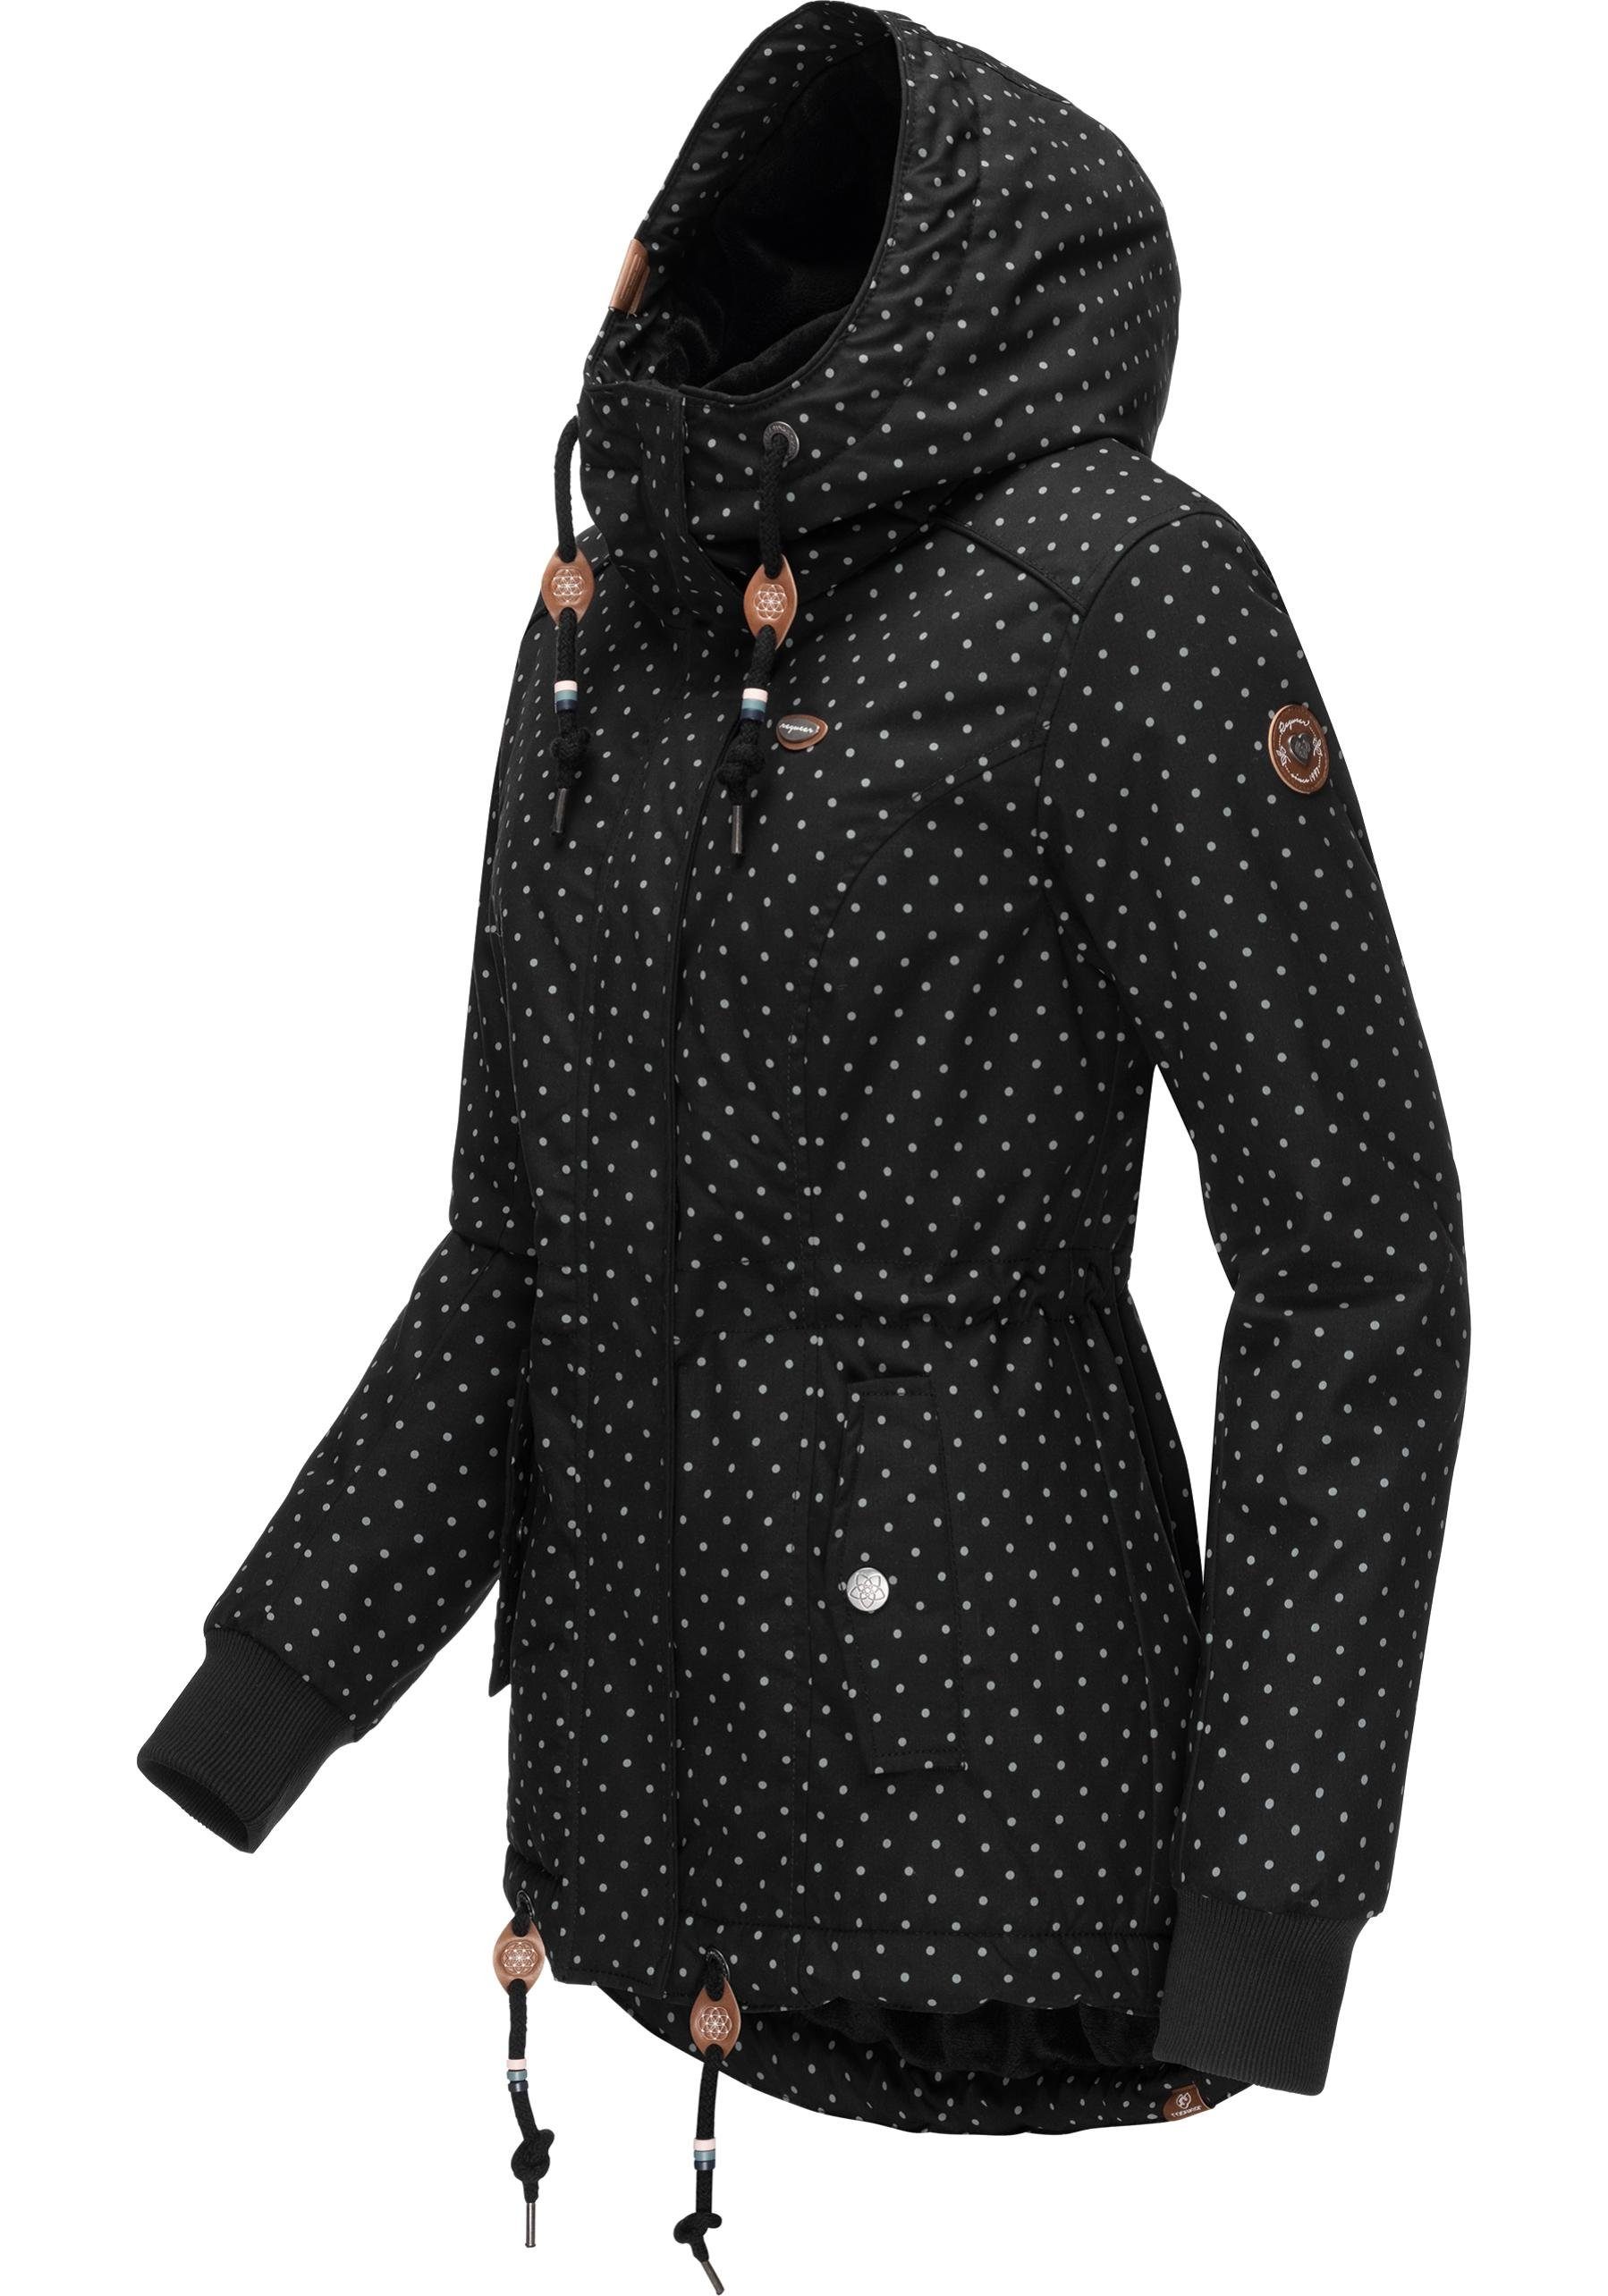 Winter stylische Outdoorjacke mit Danka Winterjacke Intl. Kapuze black Dots Ragwear